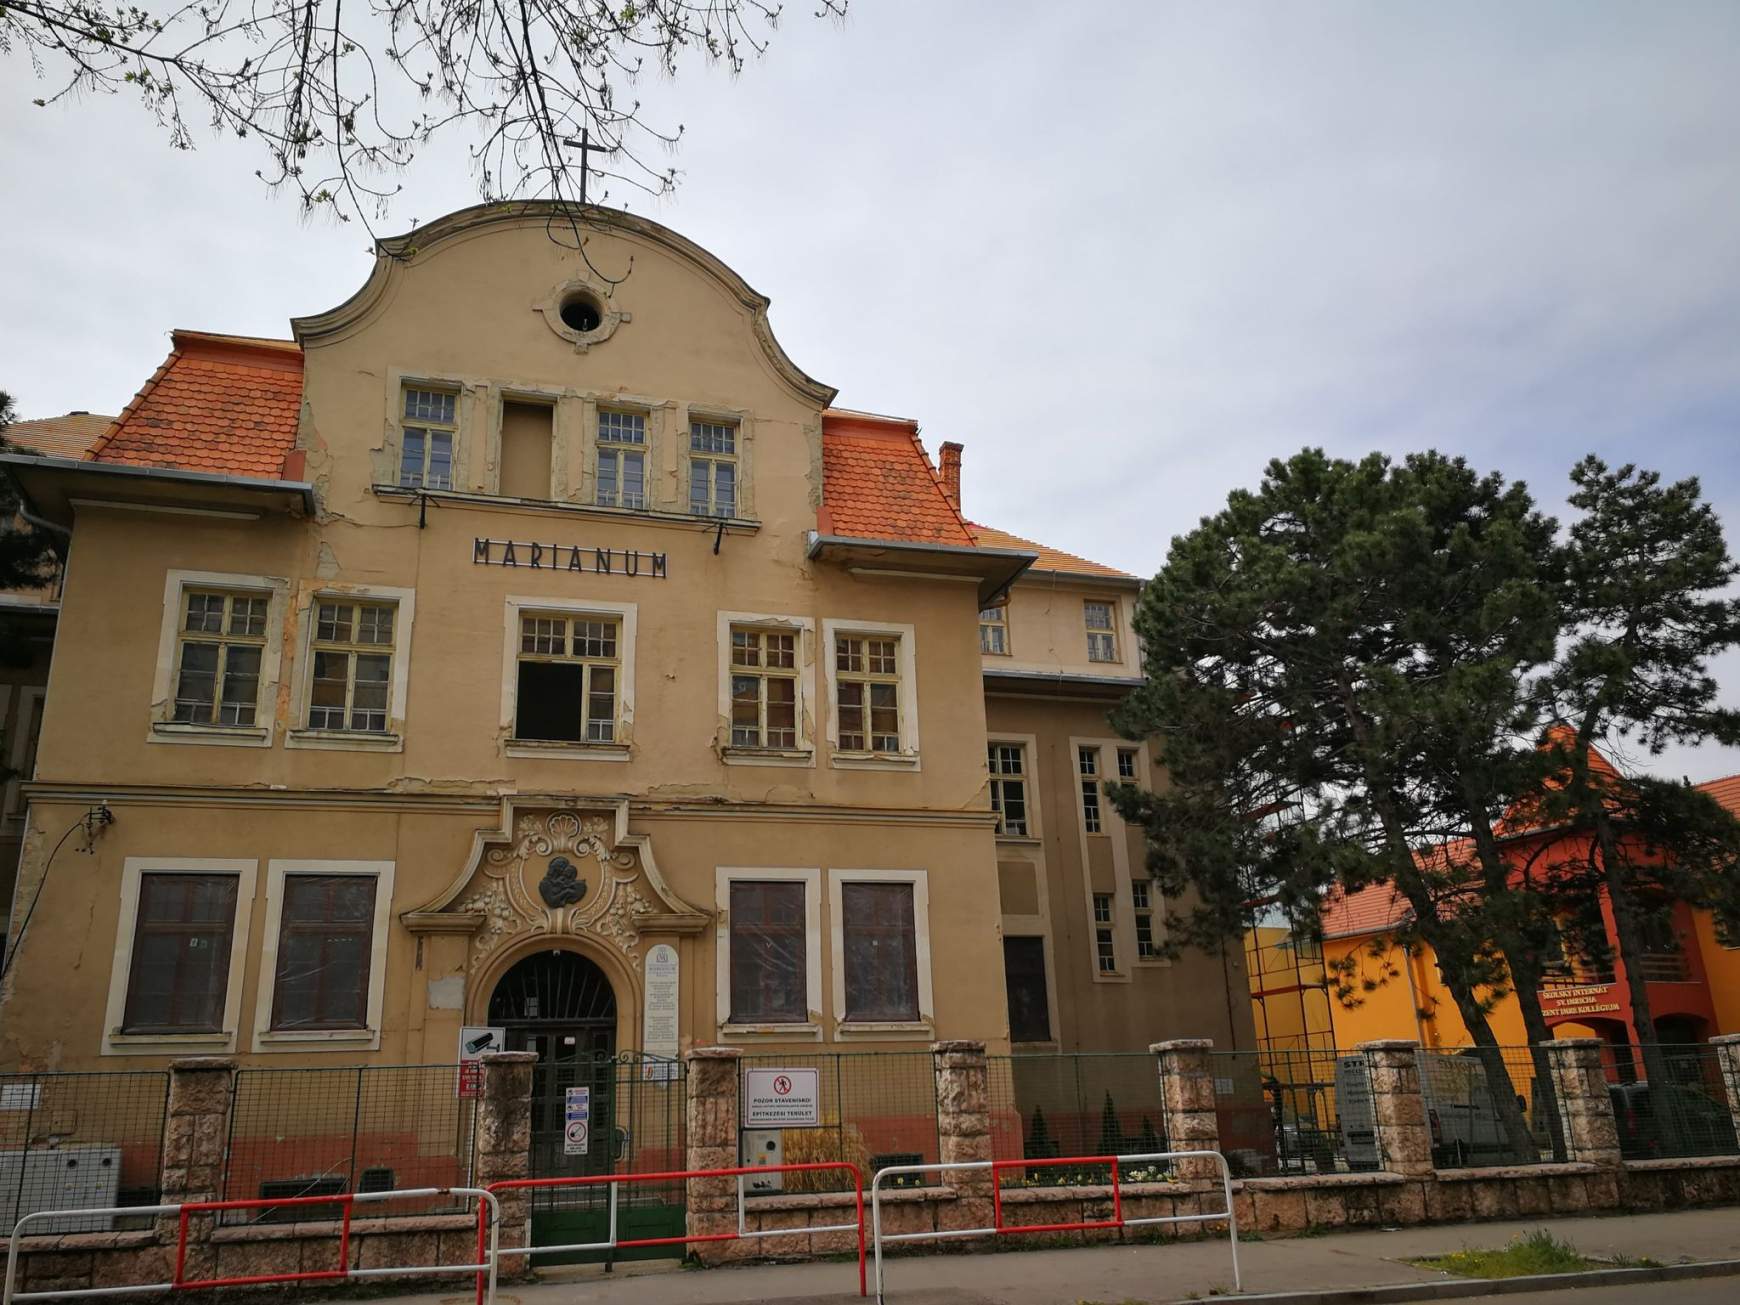  E hónapban befejeződik a  Marianum Egyházi Iskolaközpont főépületének felújítása